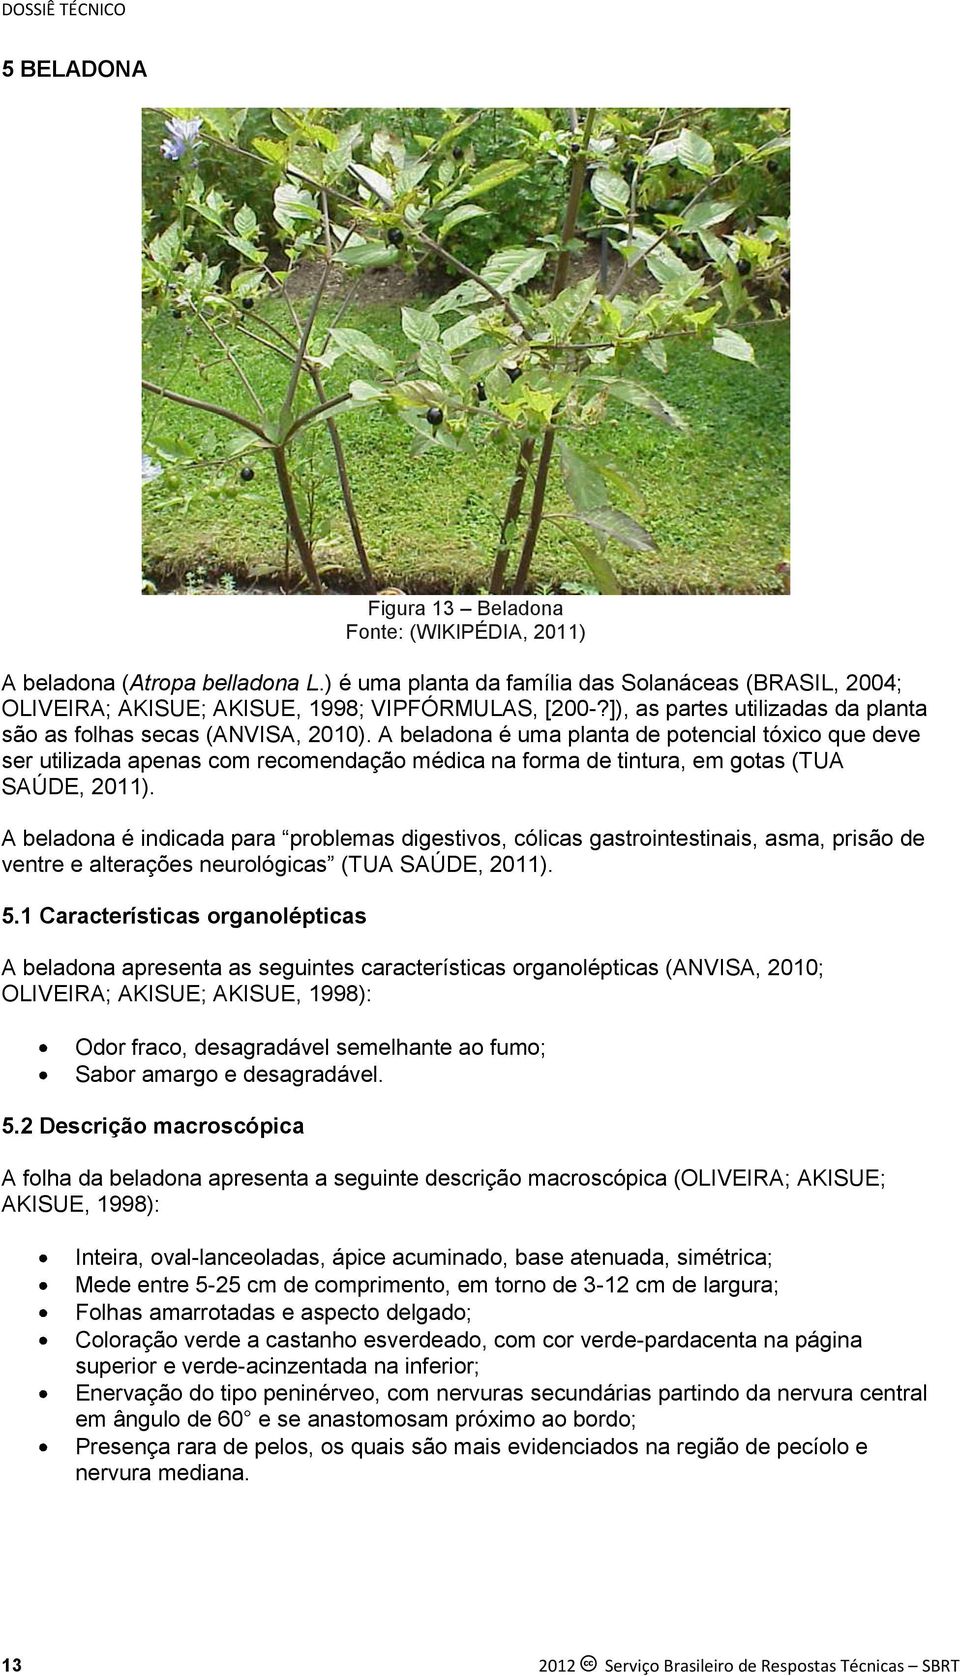 A beladona é uma planta de potencial tóxico que deve ser utilizada apenas com recomendação médica na forma de tintura, em gotas (TUA SAÚDE, 2011).